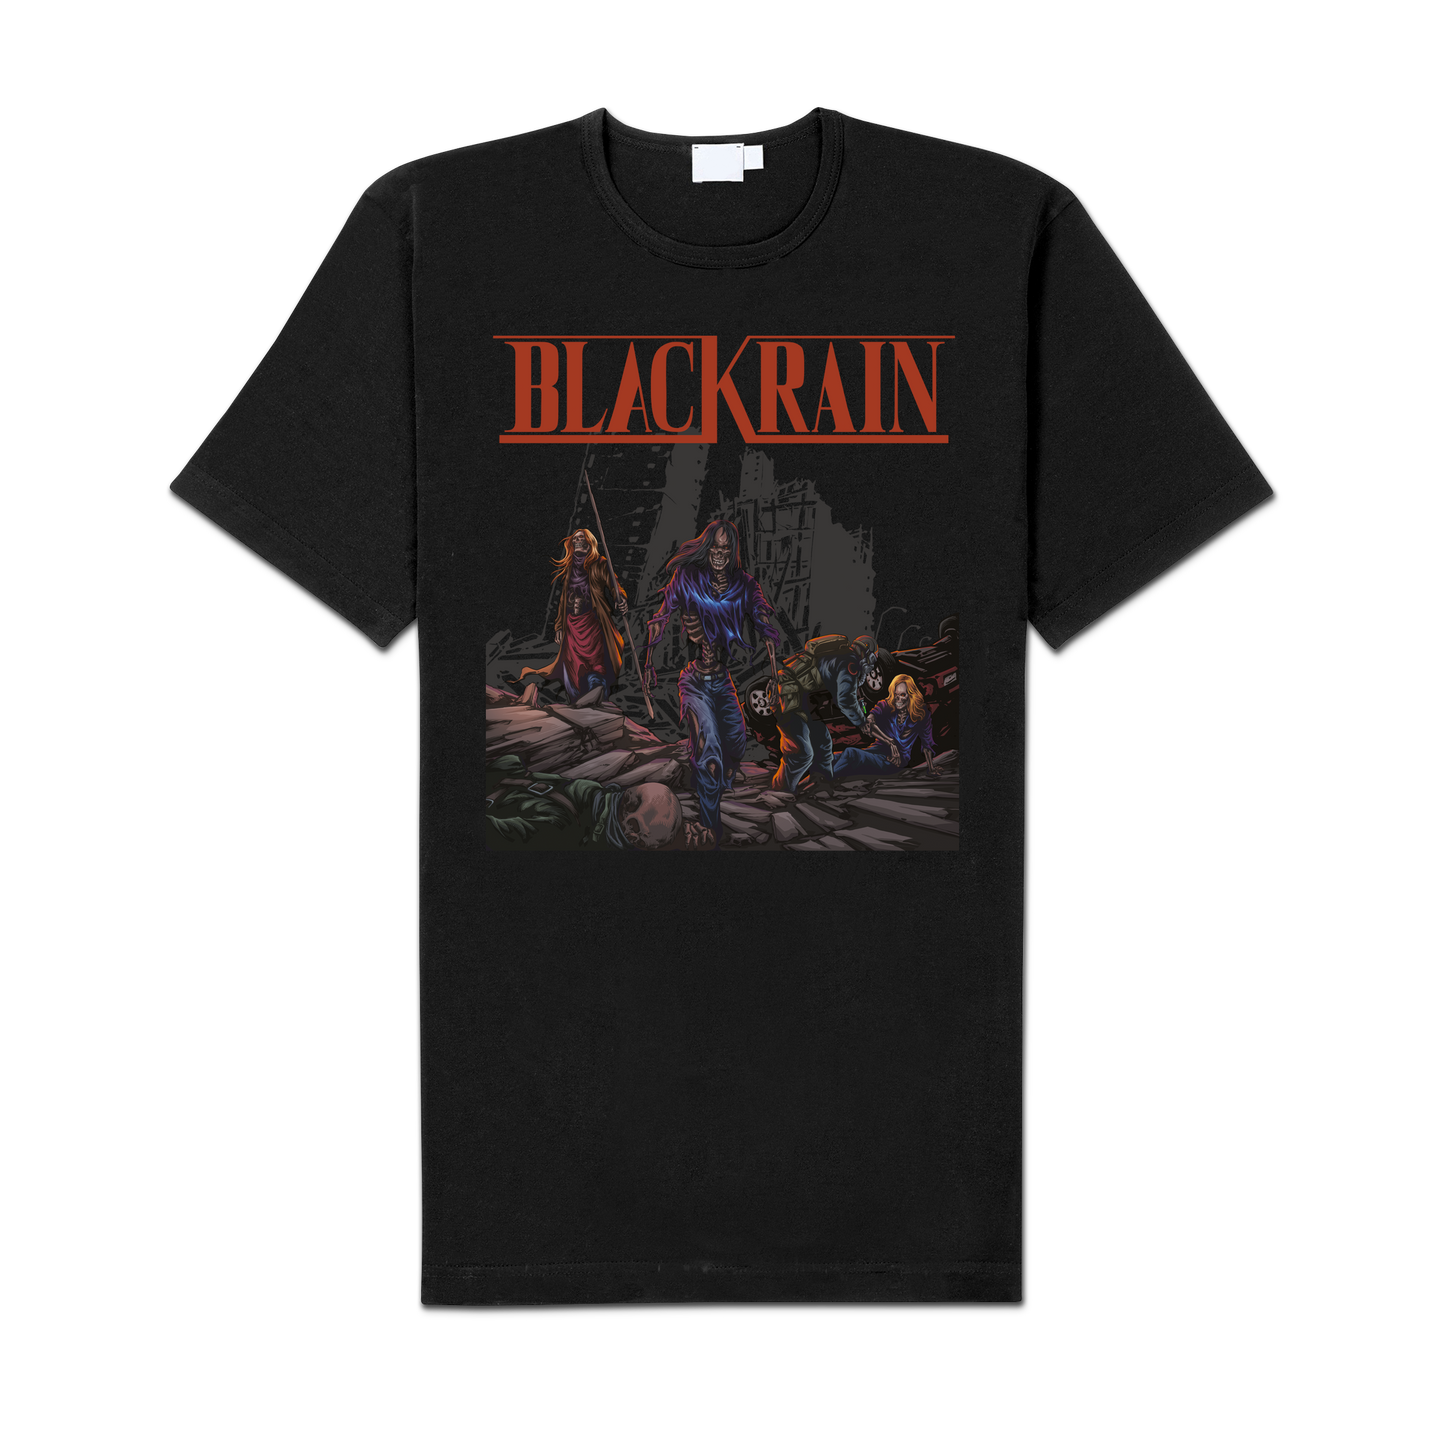 BlackRain "Untamed" Shirt